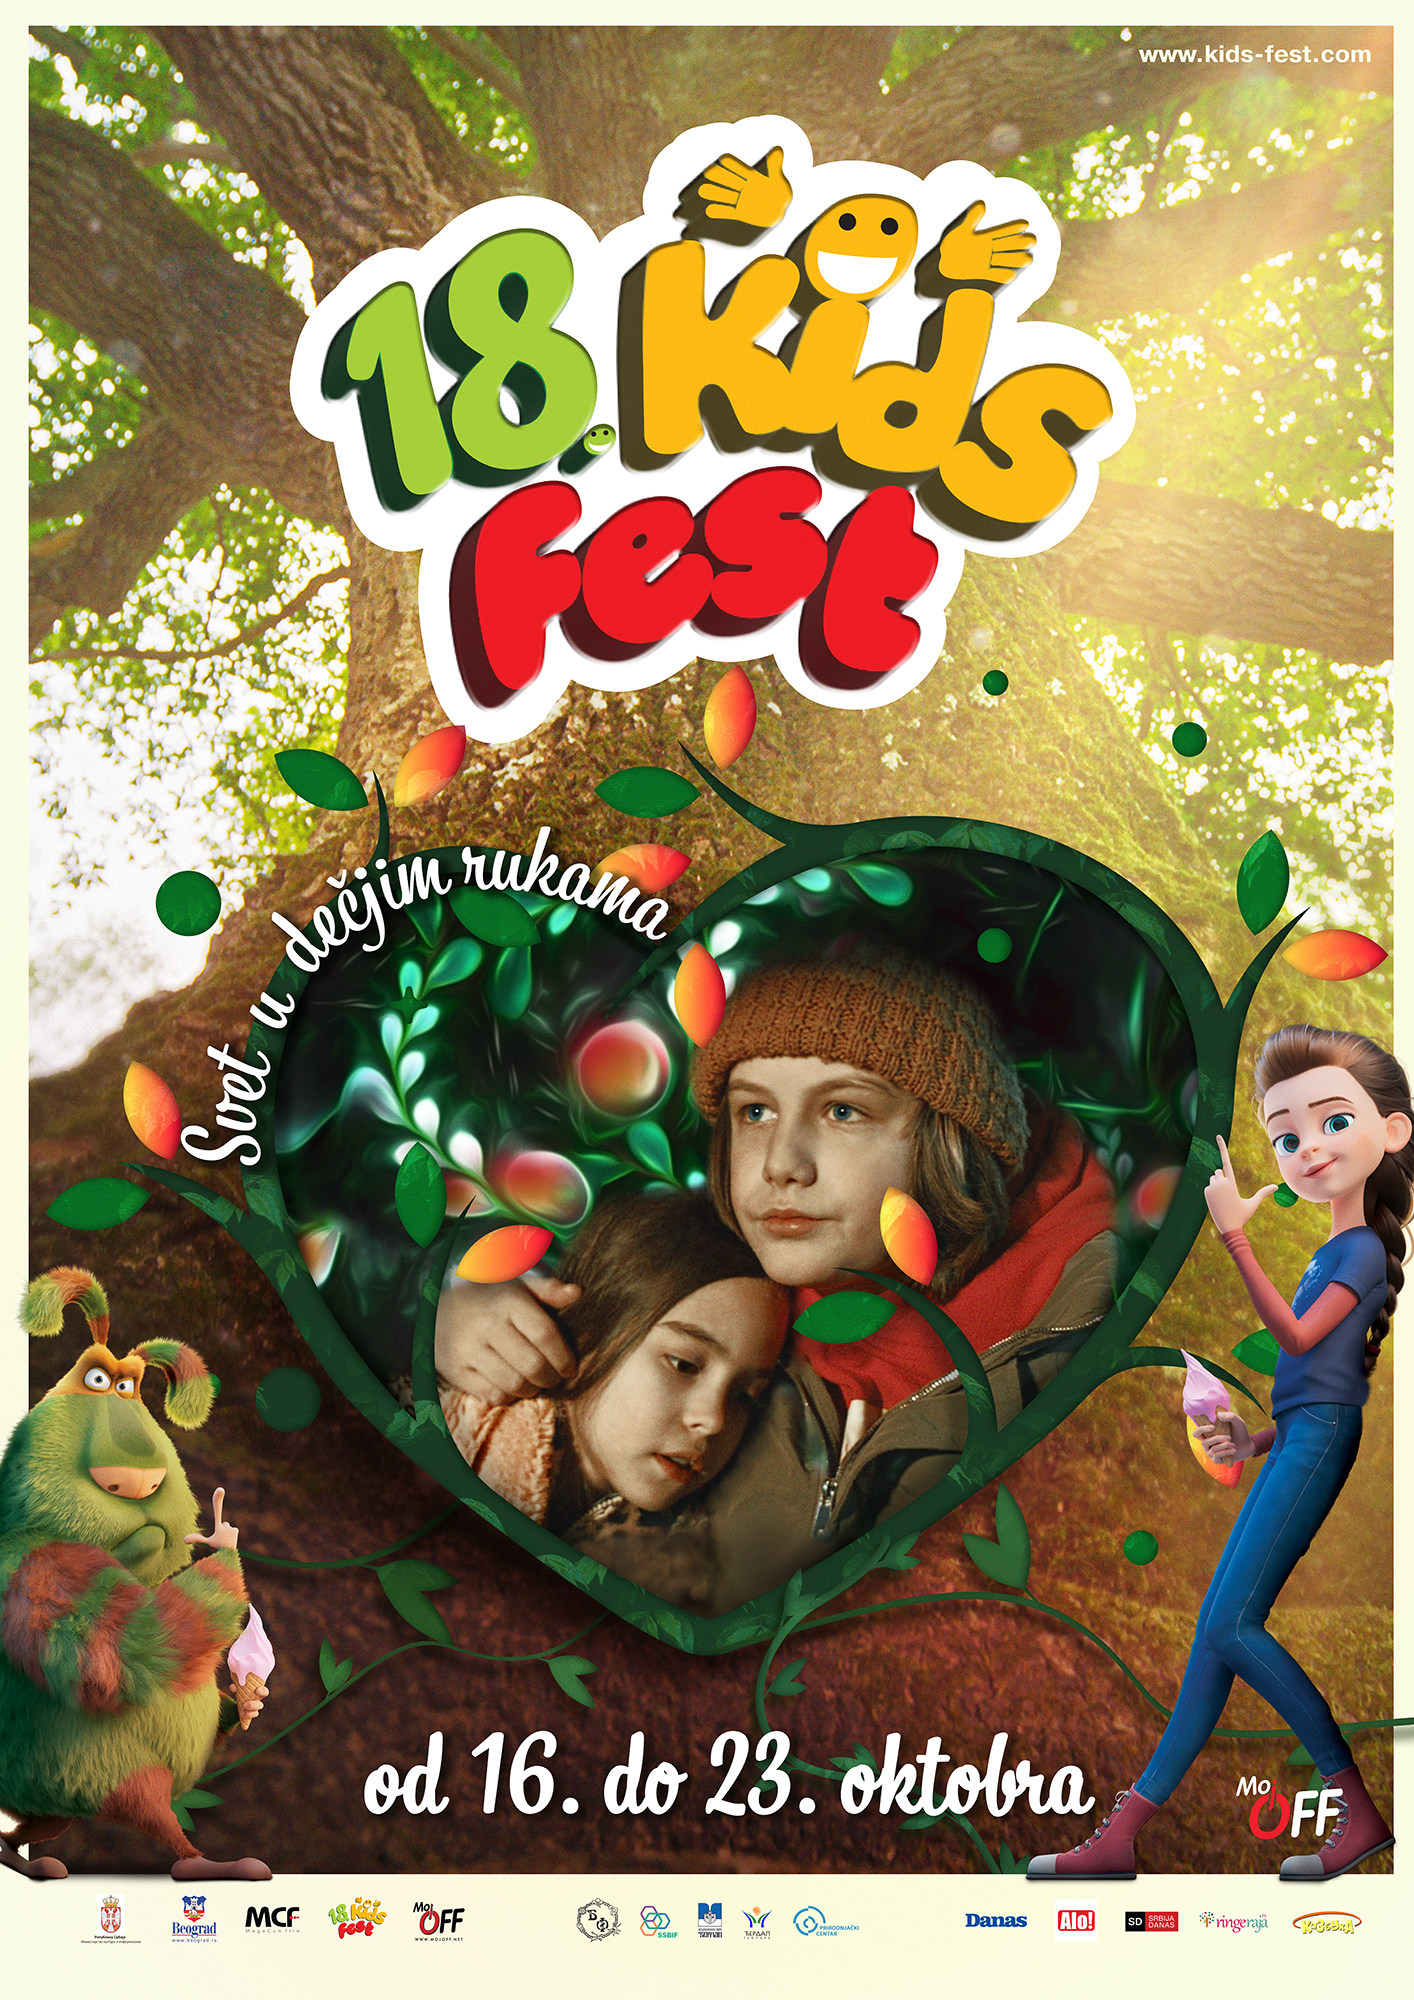 KIDS FEST slavi punoletstvo - od 16. do 23. oktobra u domaćim bioskopima